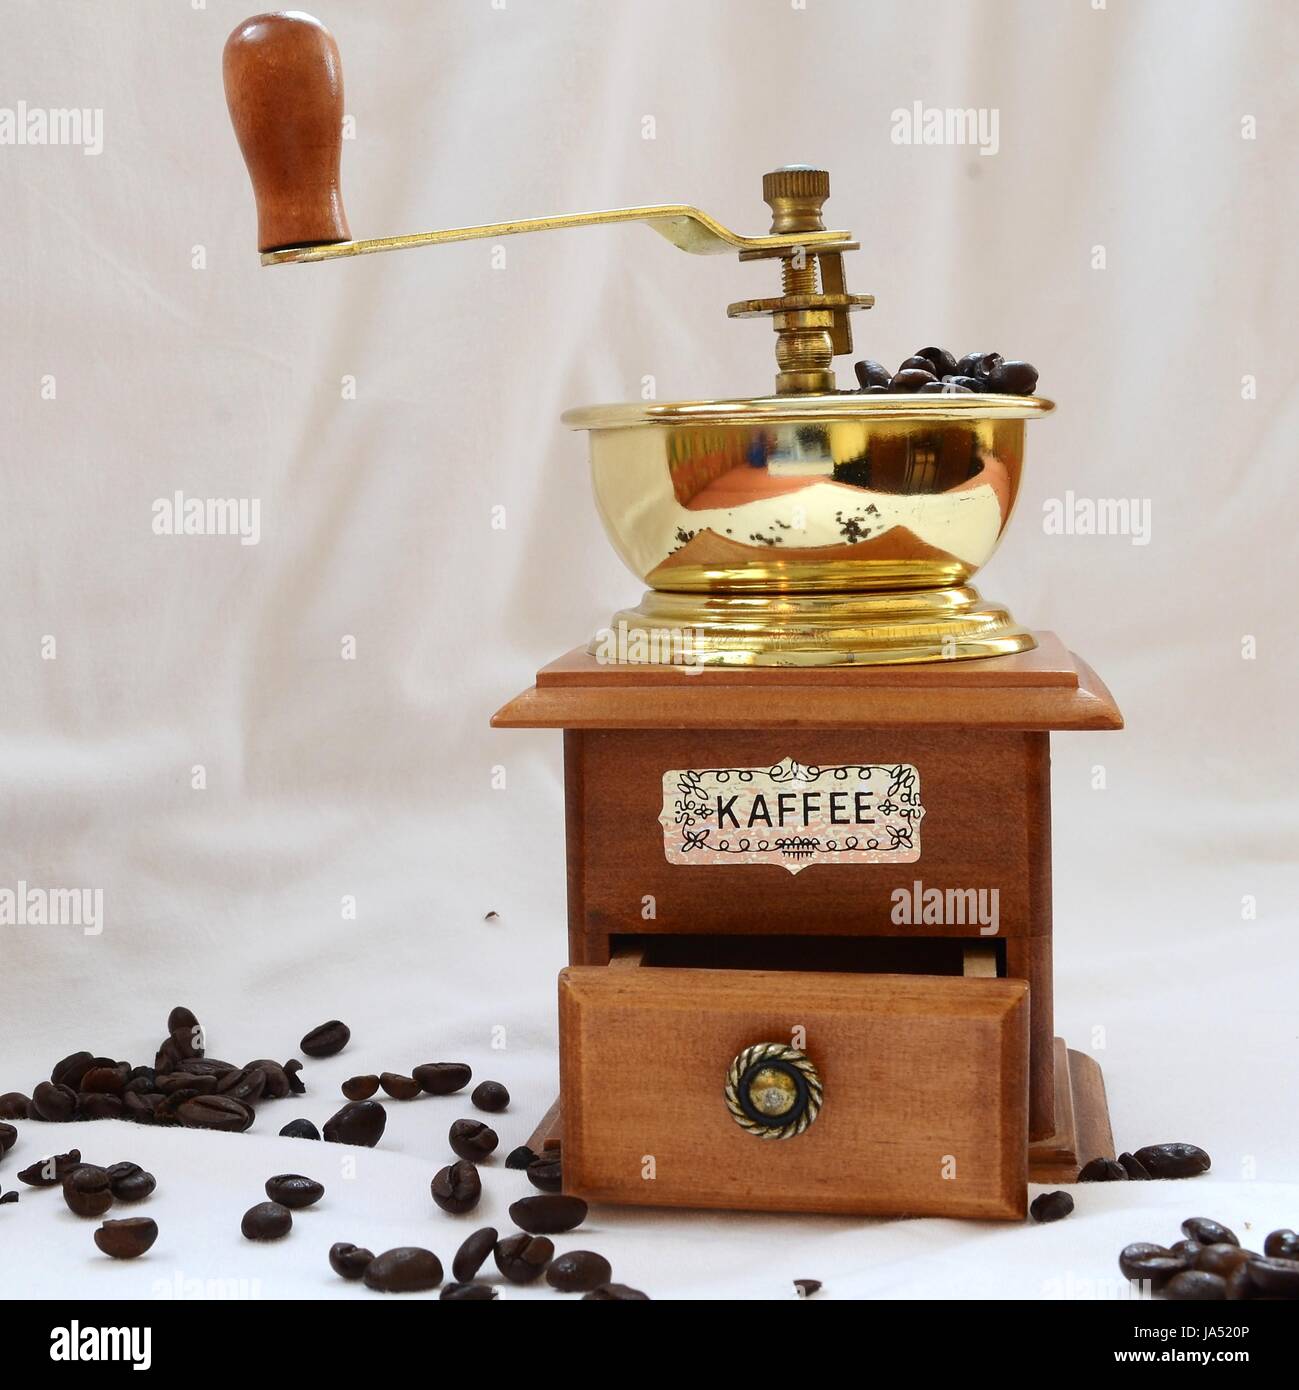 Kaffeemuehle mit Kaffeebohnen - quadratisches Format Stock Photo